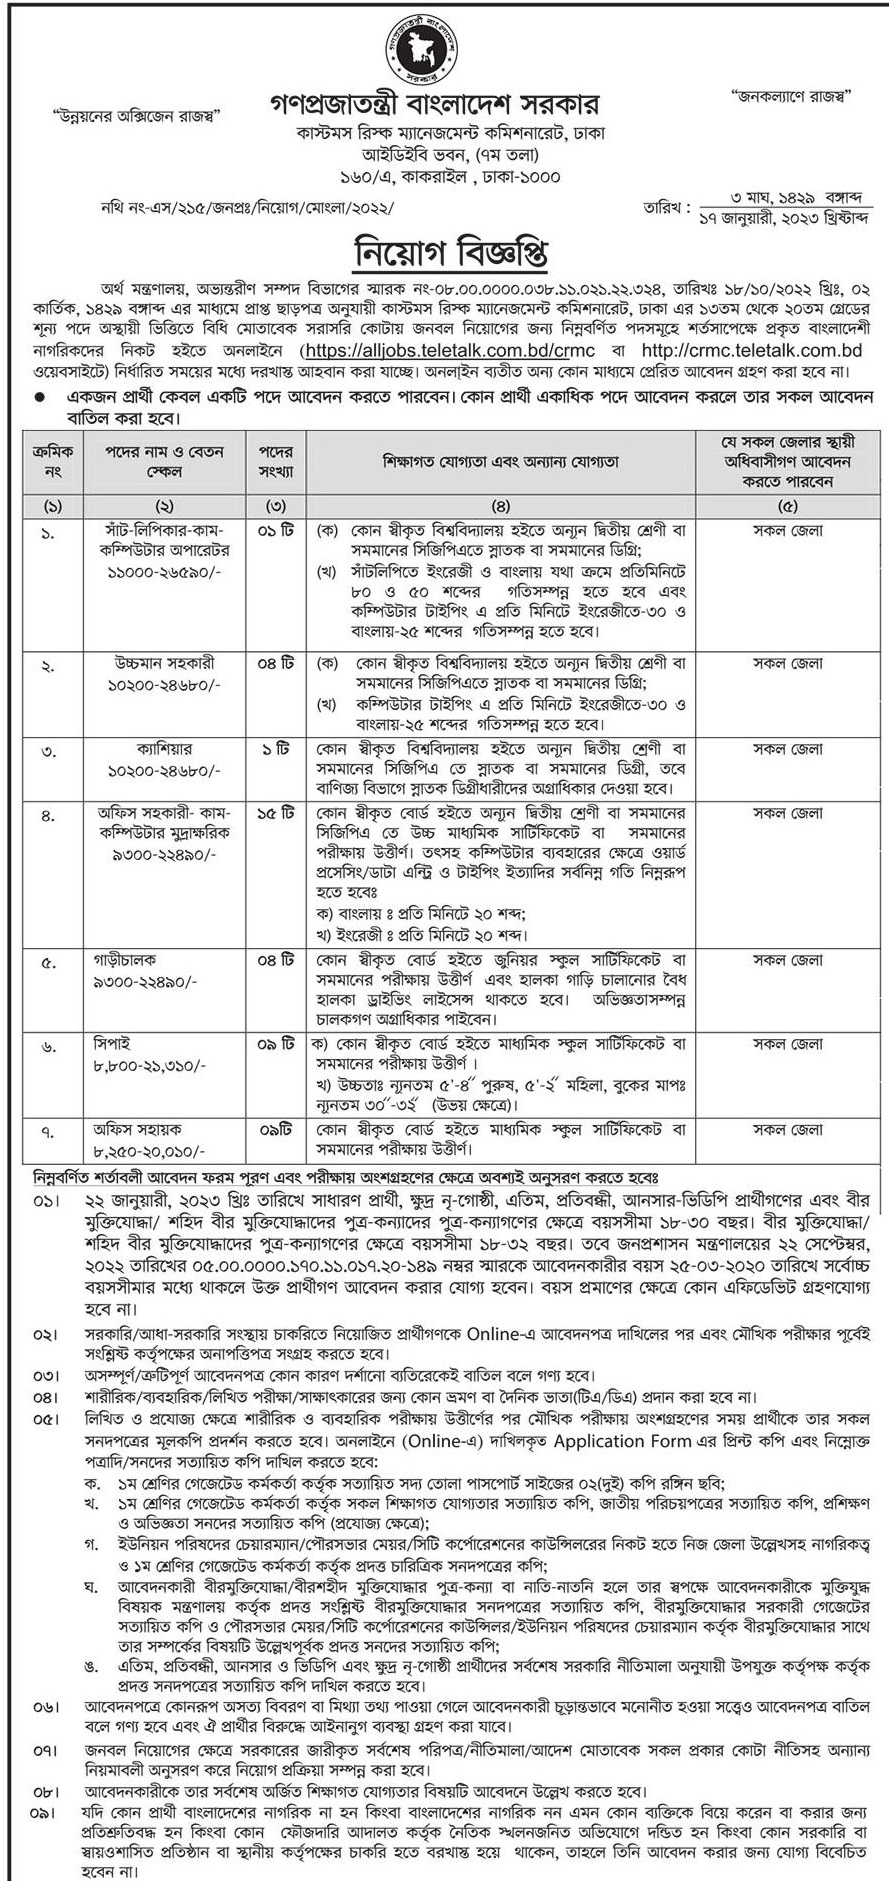 বাংলাদেশ কাস্টমস নিয়োগ বিজ্ঞপ্তি ২০২৩ - Bangladesh Customs Recruitment Circular 2023